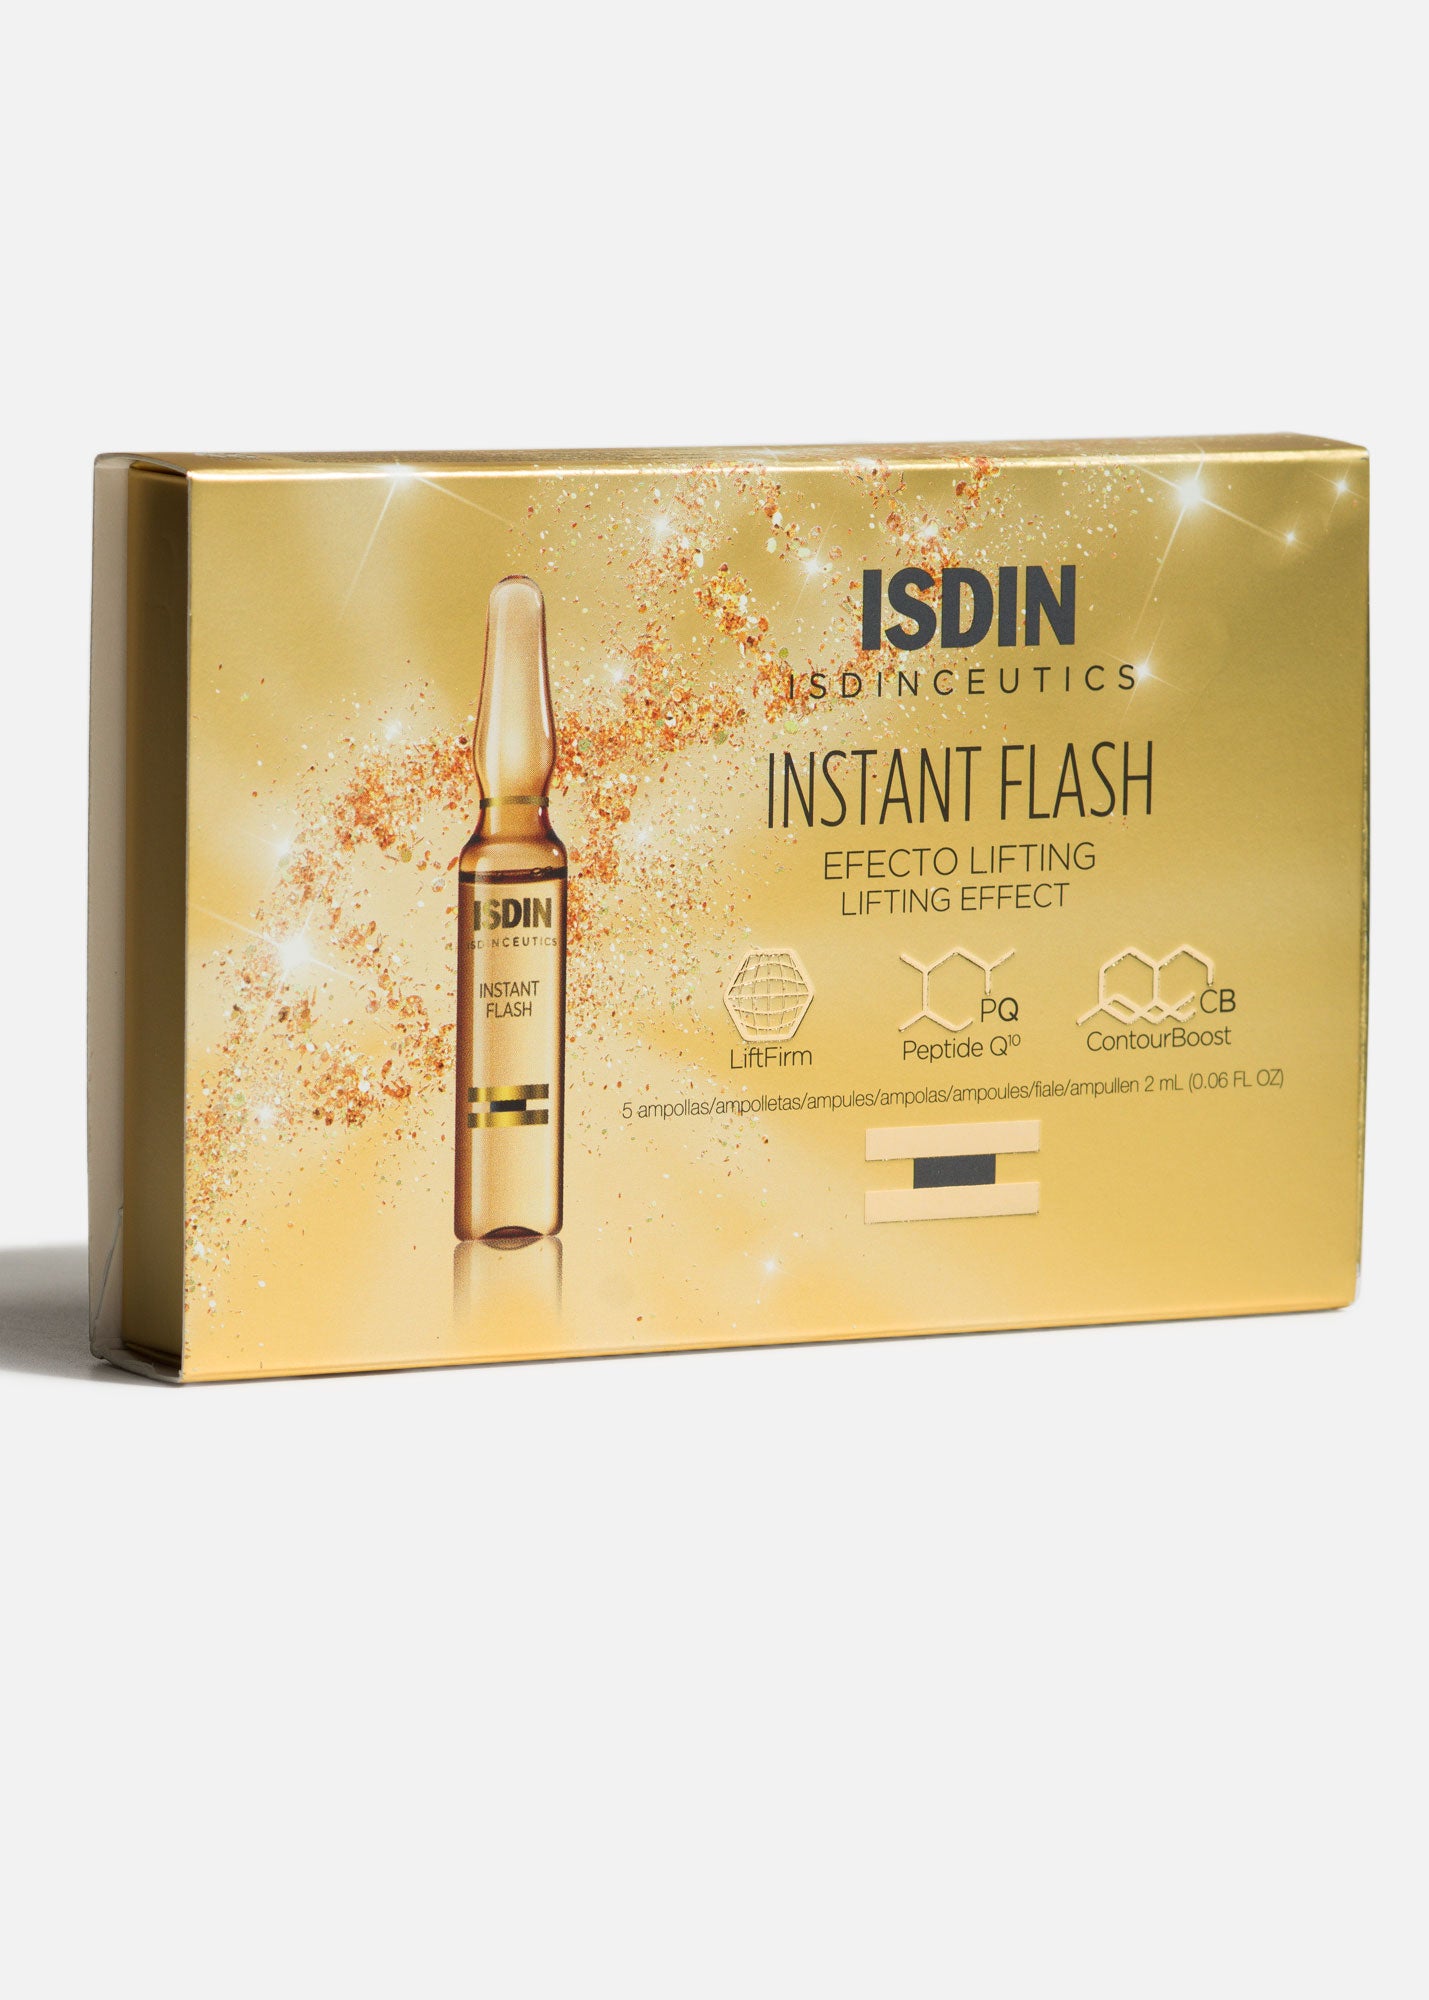 Isdinceutics Instant Flash, 5 Ampolletas de 2 ml c/u.